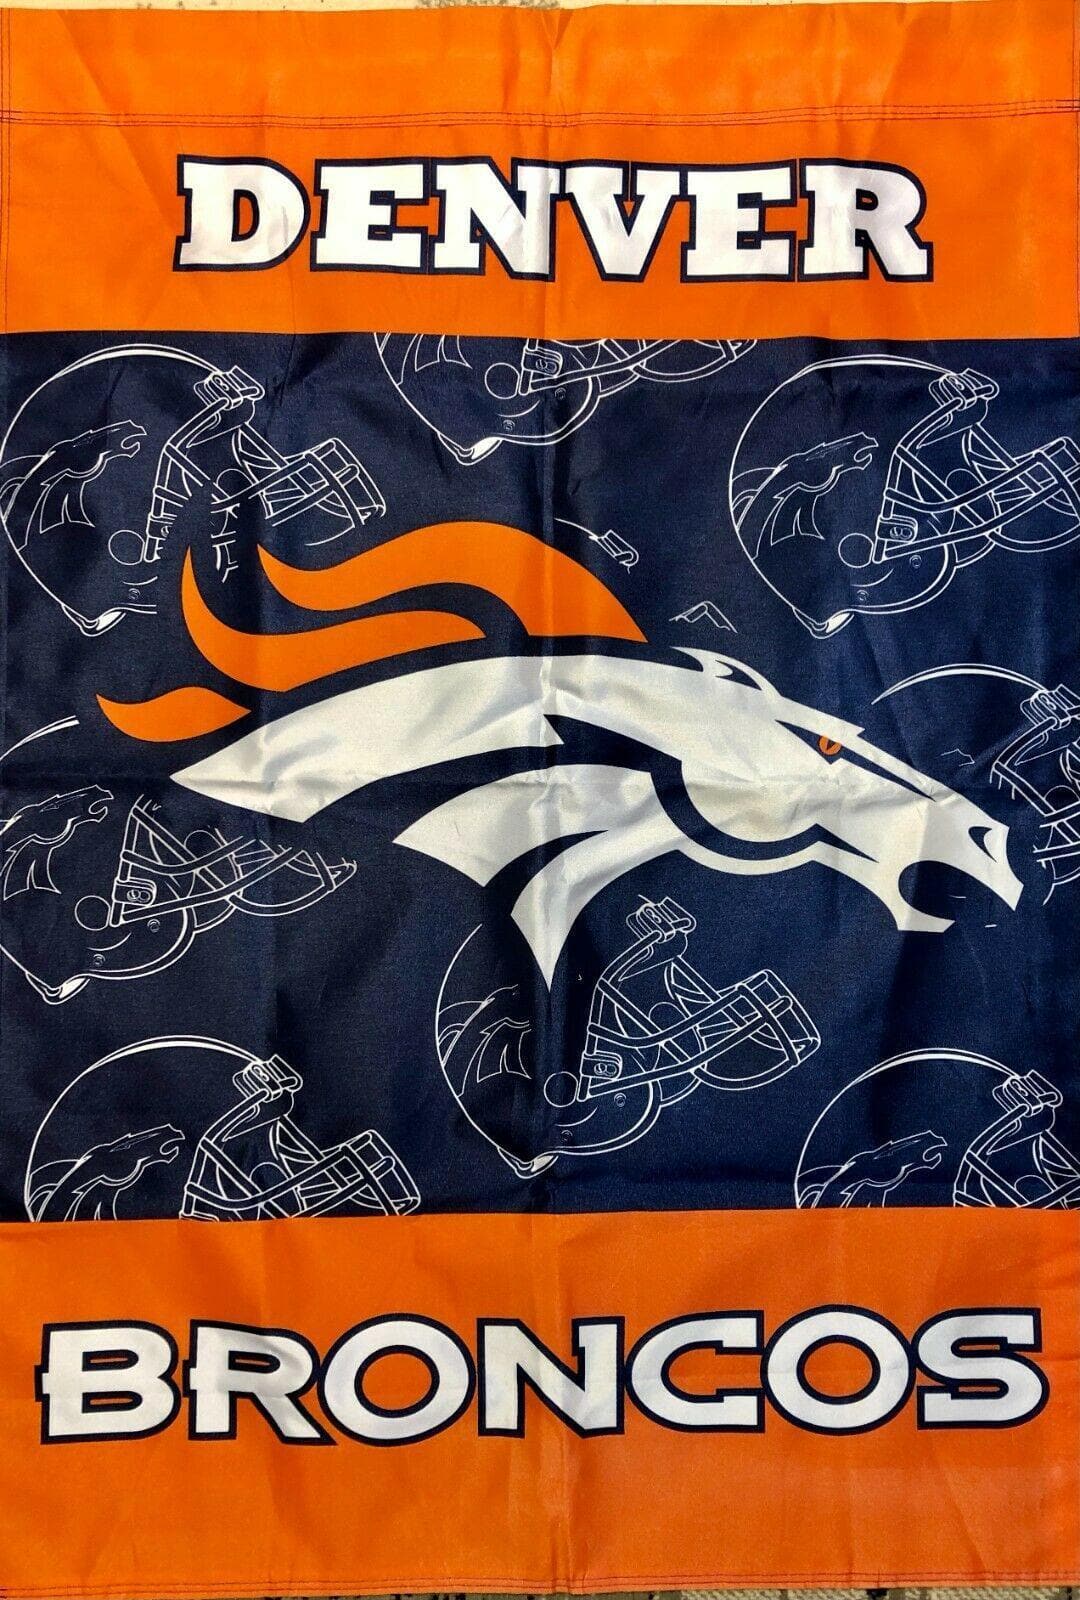 NFL Denver Broncos 4' x 3' Flag Vertical Thick & Nice for Fan Cave!